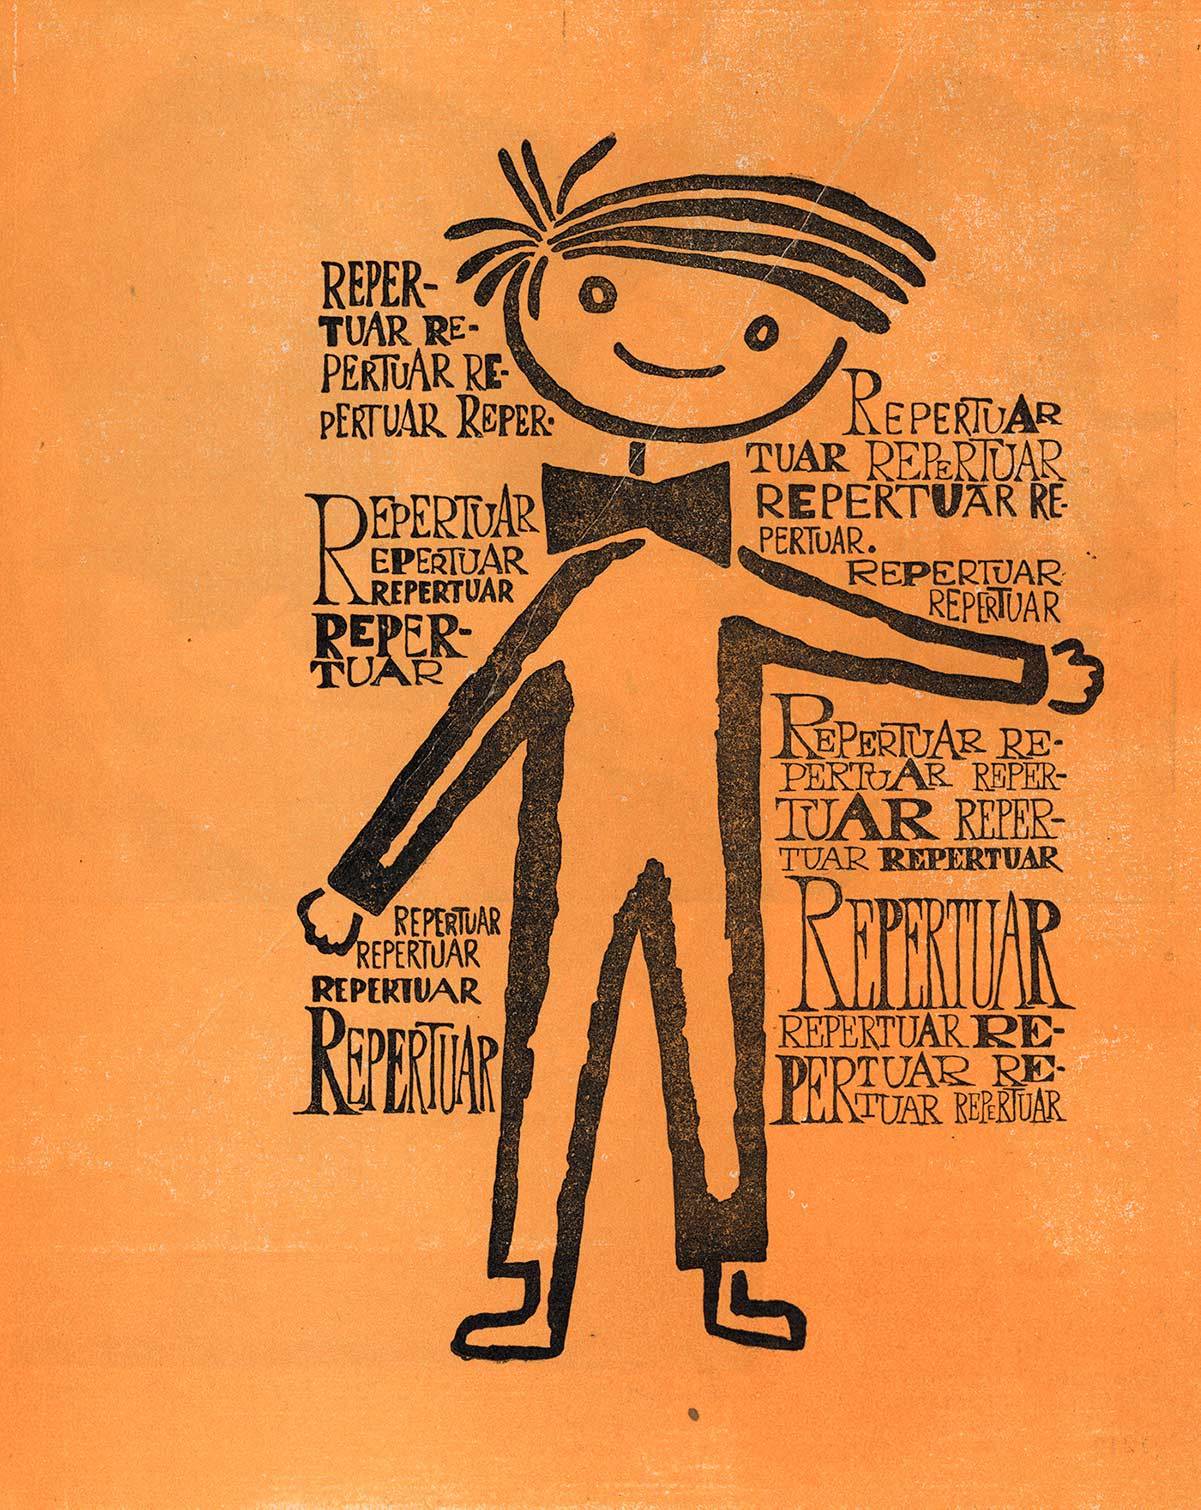 Ilustracja z publikacji jubileuszowej na 20-lecie działalności rabczańskiego teatru w opracowaniu graficznym Jerzego Koleckiego, 1969.